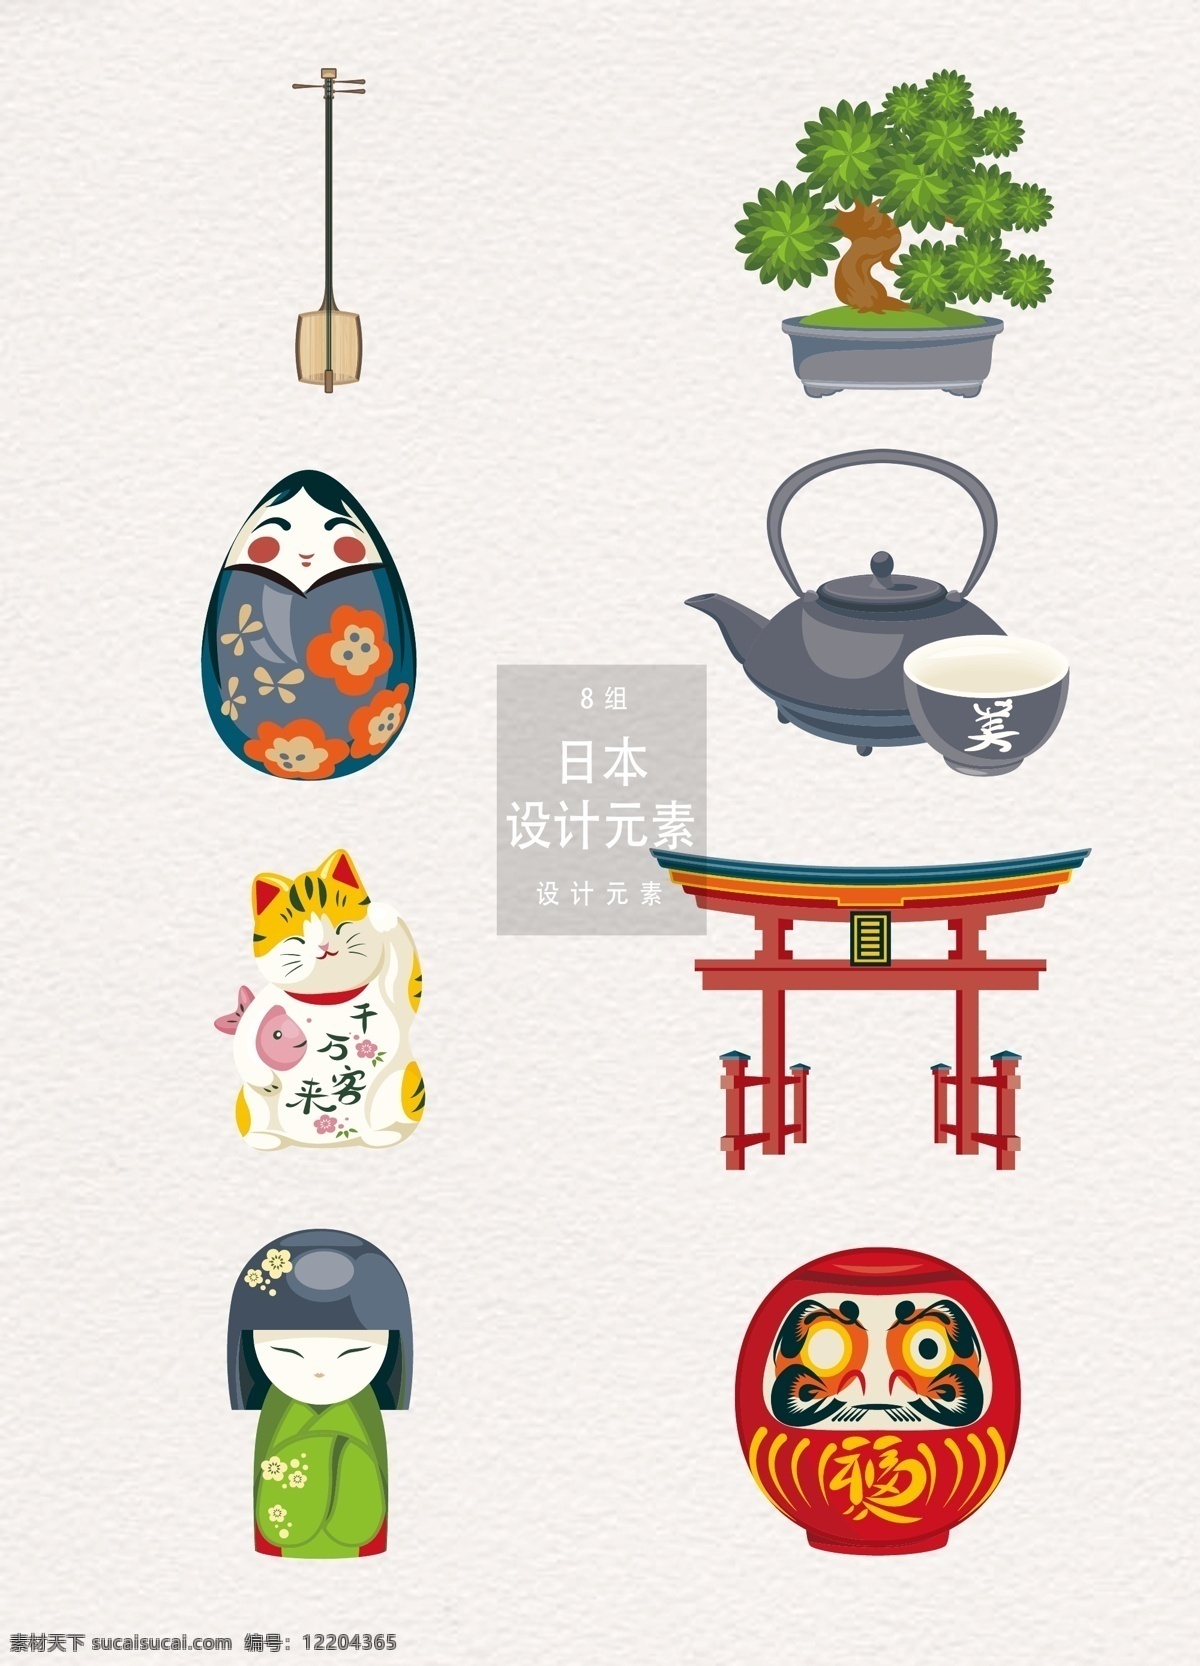 日本 元素 装饰 图案 设计素材 日式 装饰图案 松树 茶道 日本元素 不倒翁 膨胀 神社 招财猫 茶